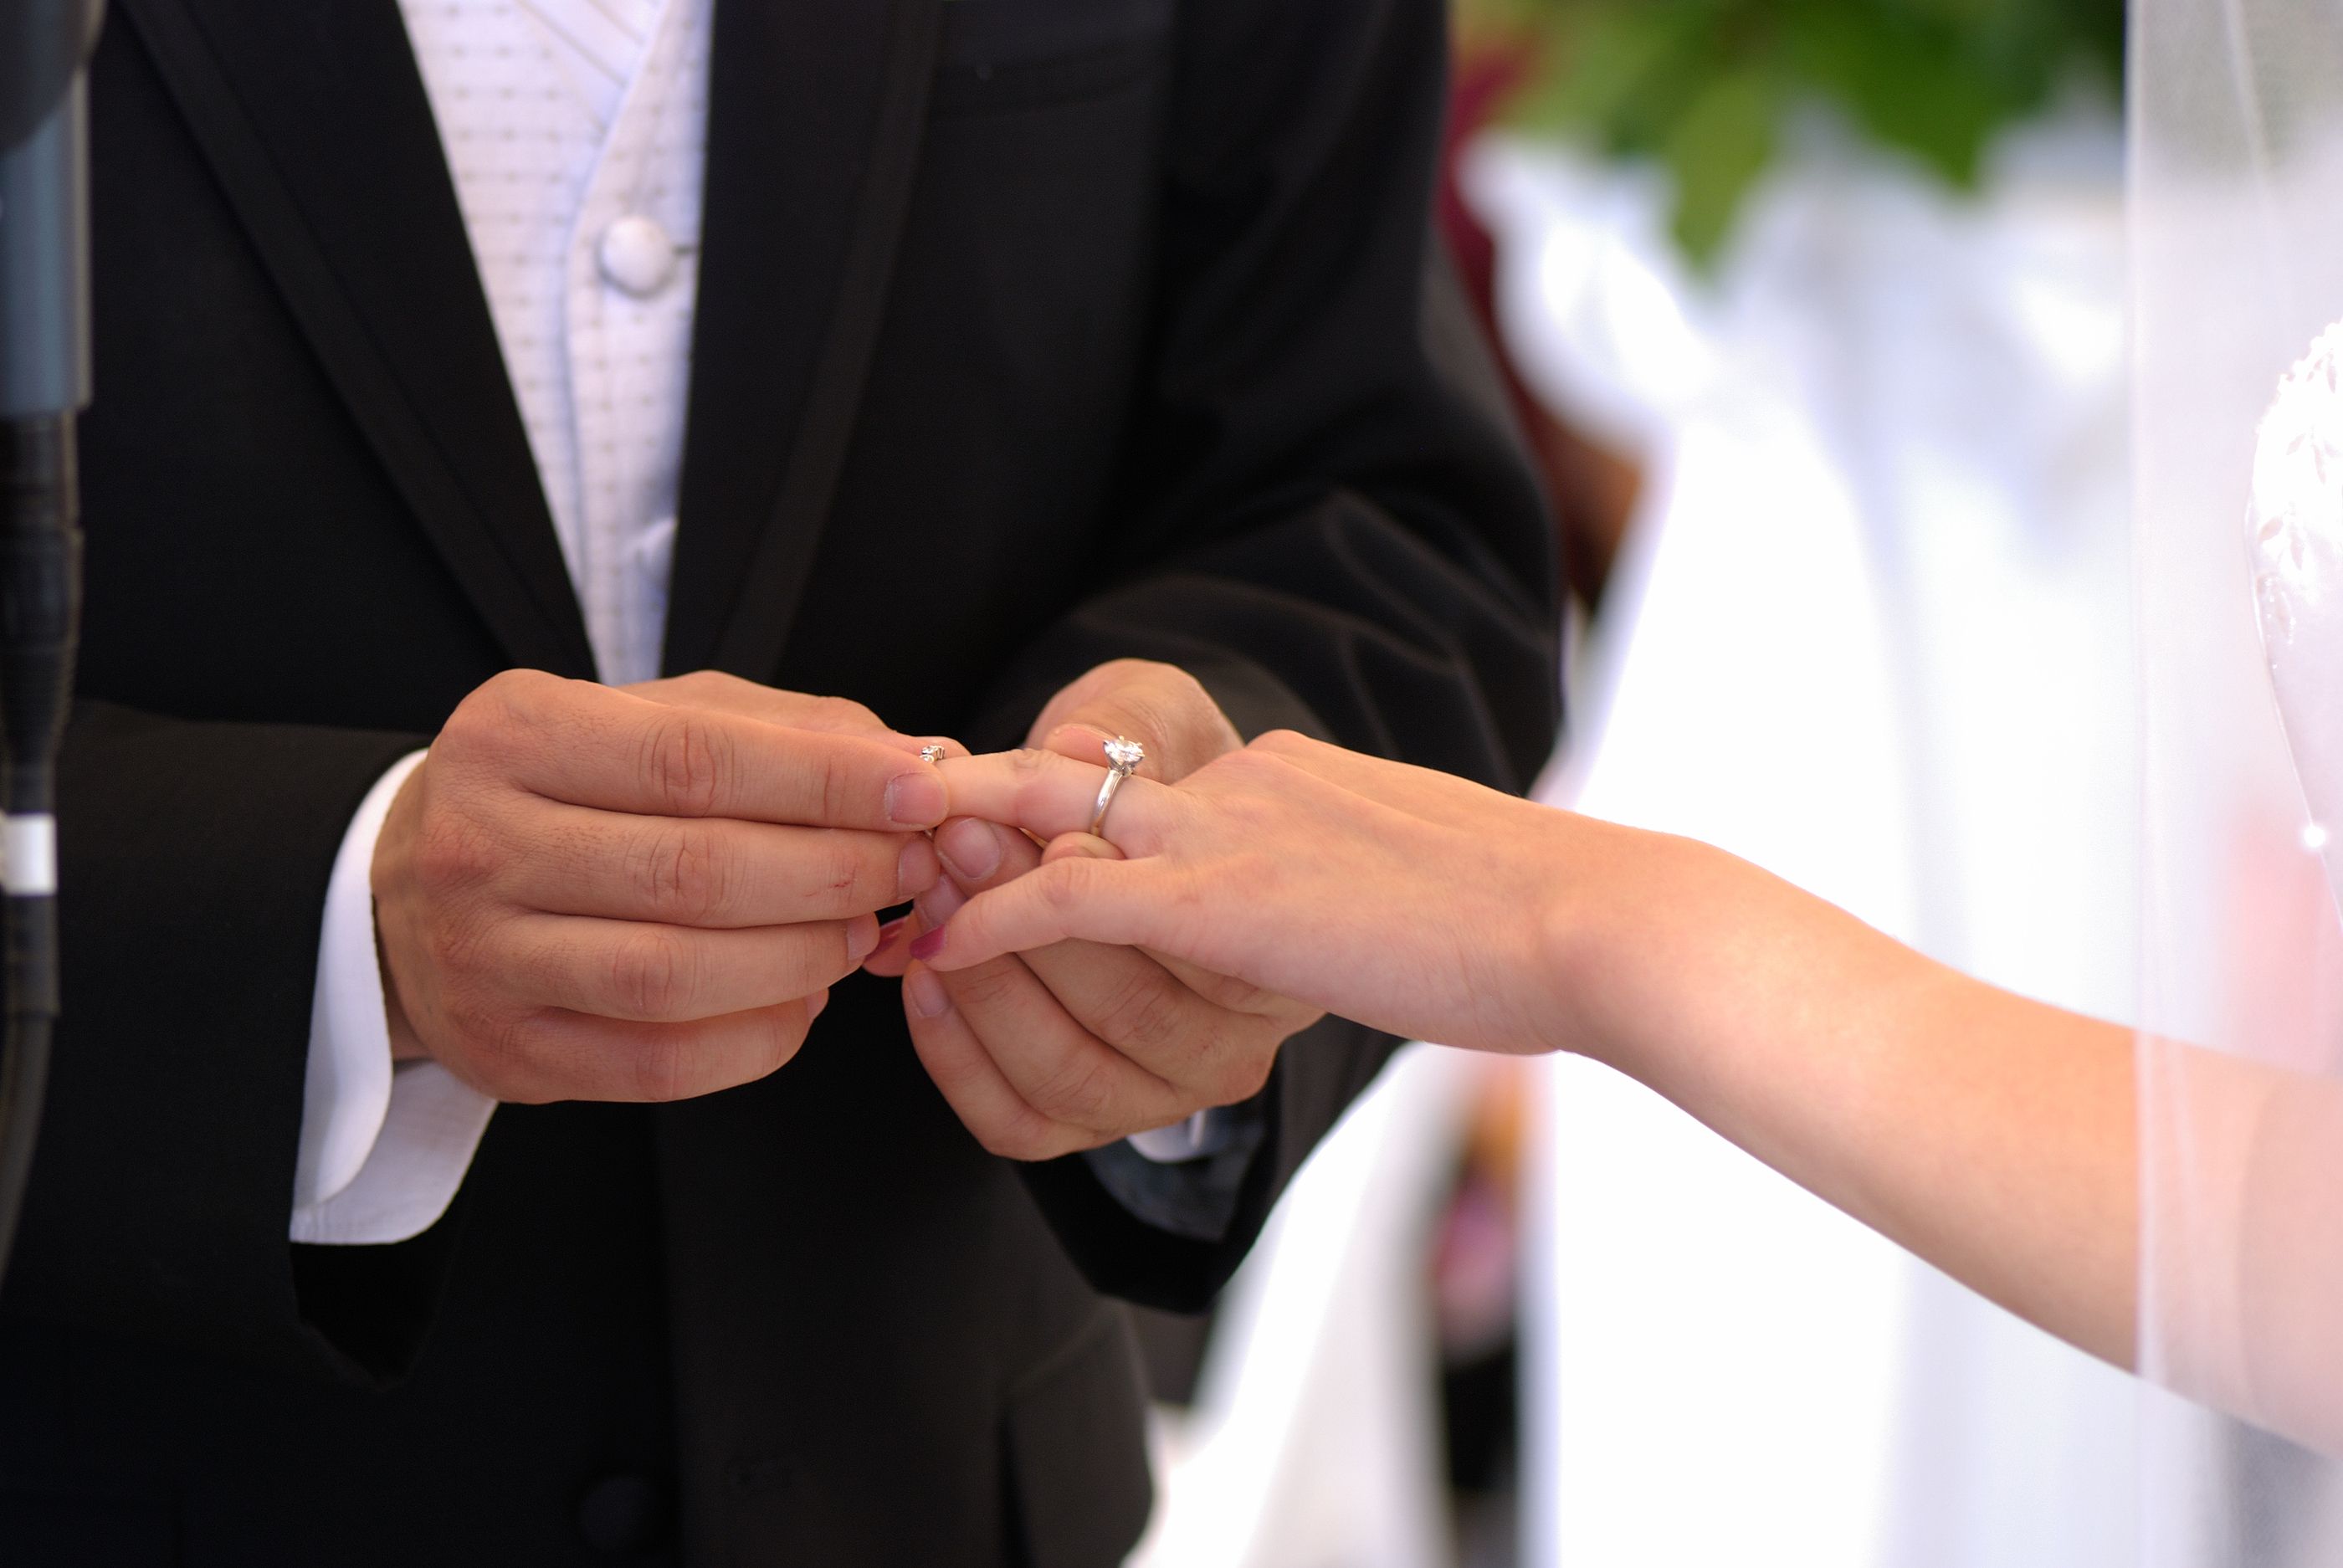 Casarse antes de los 30, una tradición que se desploma en España (Bigstock)